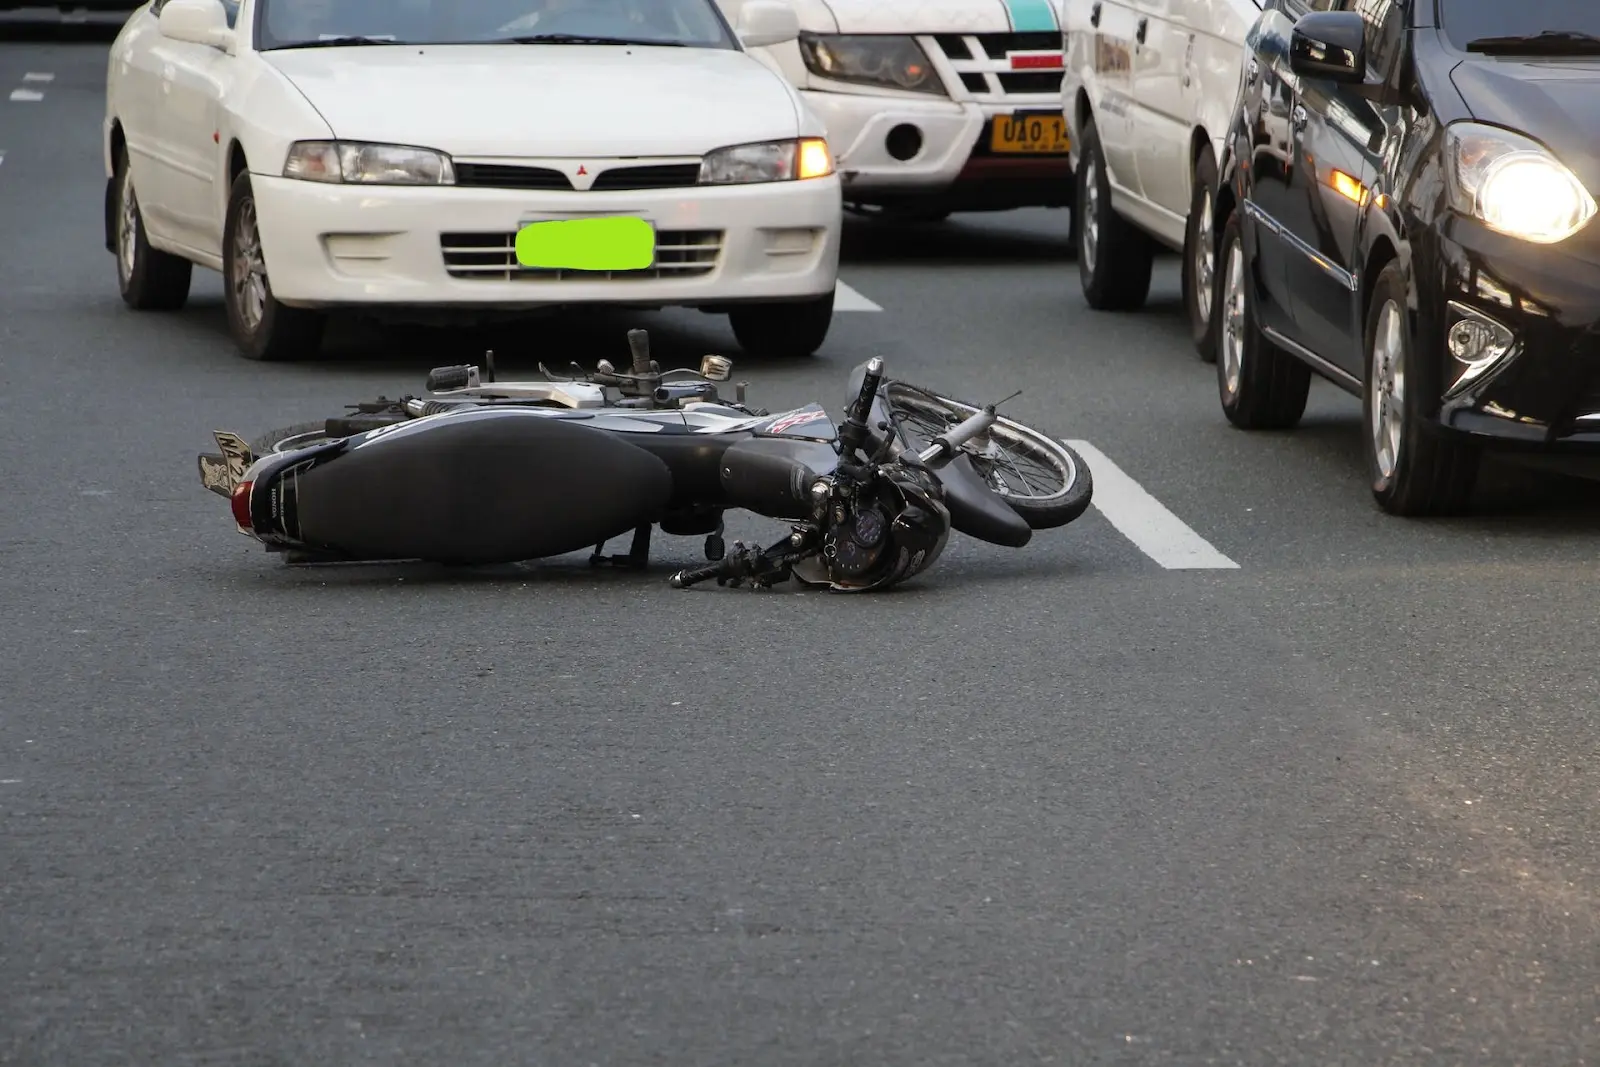 culpabilidad motocicleta vs camion detenido sobre la calzada - Cómo saber quién tuvo la culpa en un accidente